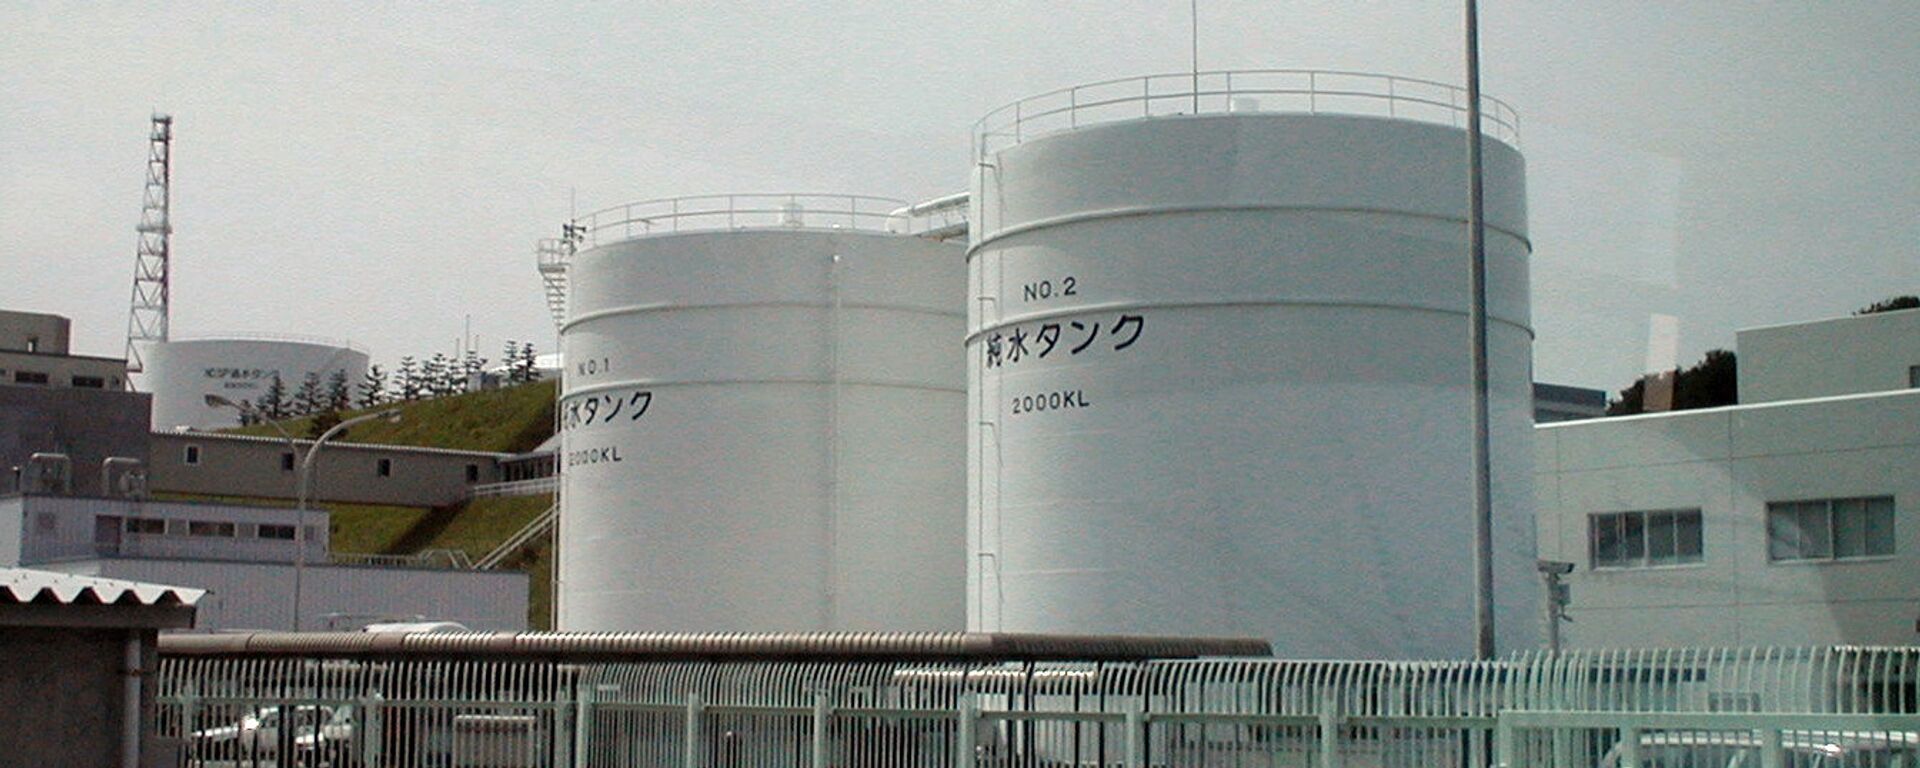 La planta japonesa de Fukushima. - Sputnik Mundo, 1920, 14.02.2021